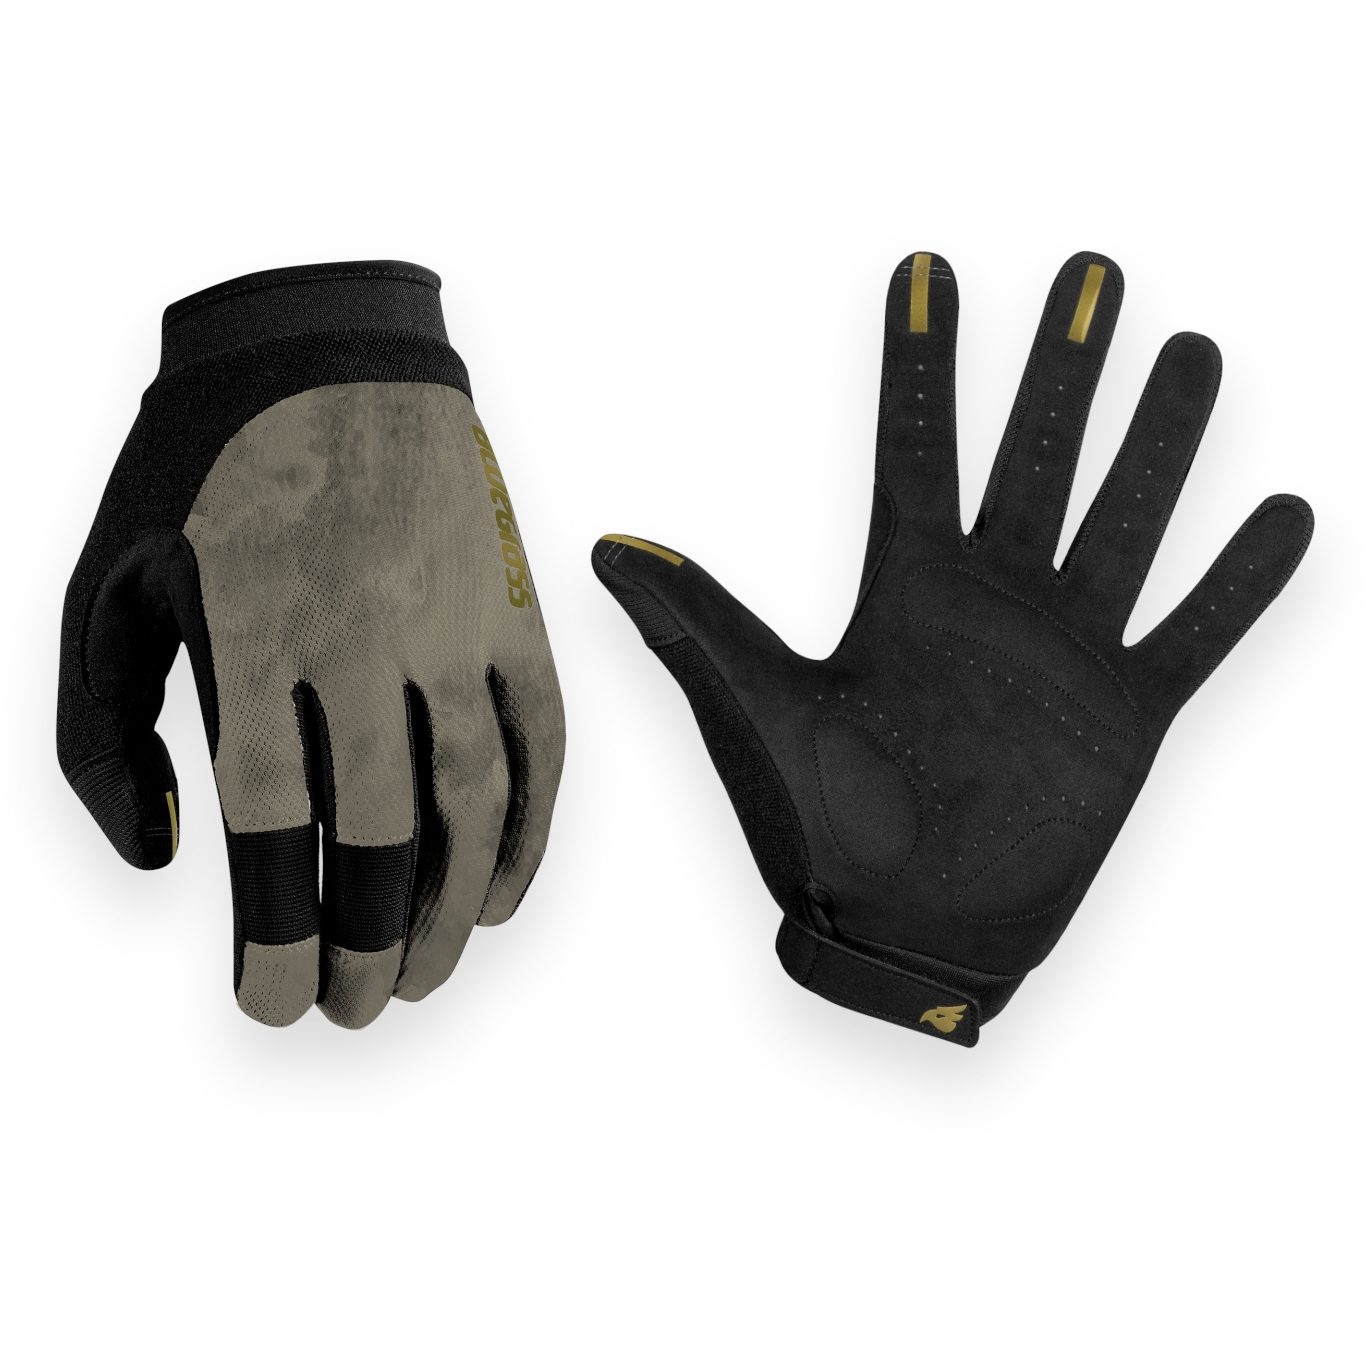 Produktbild von Bluegrass React MTB-Handschuhe - grau